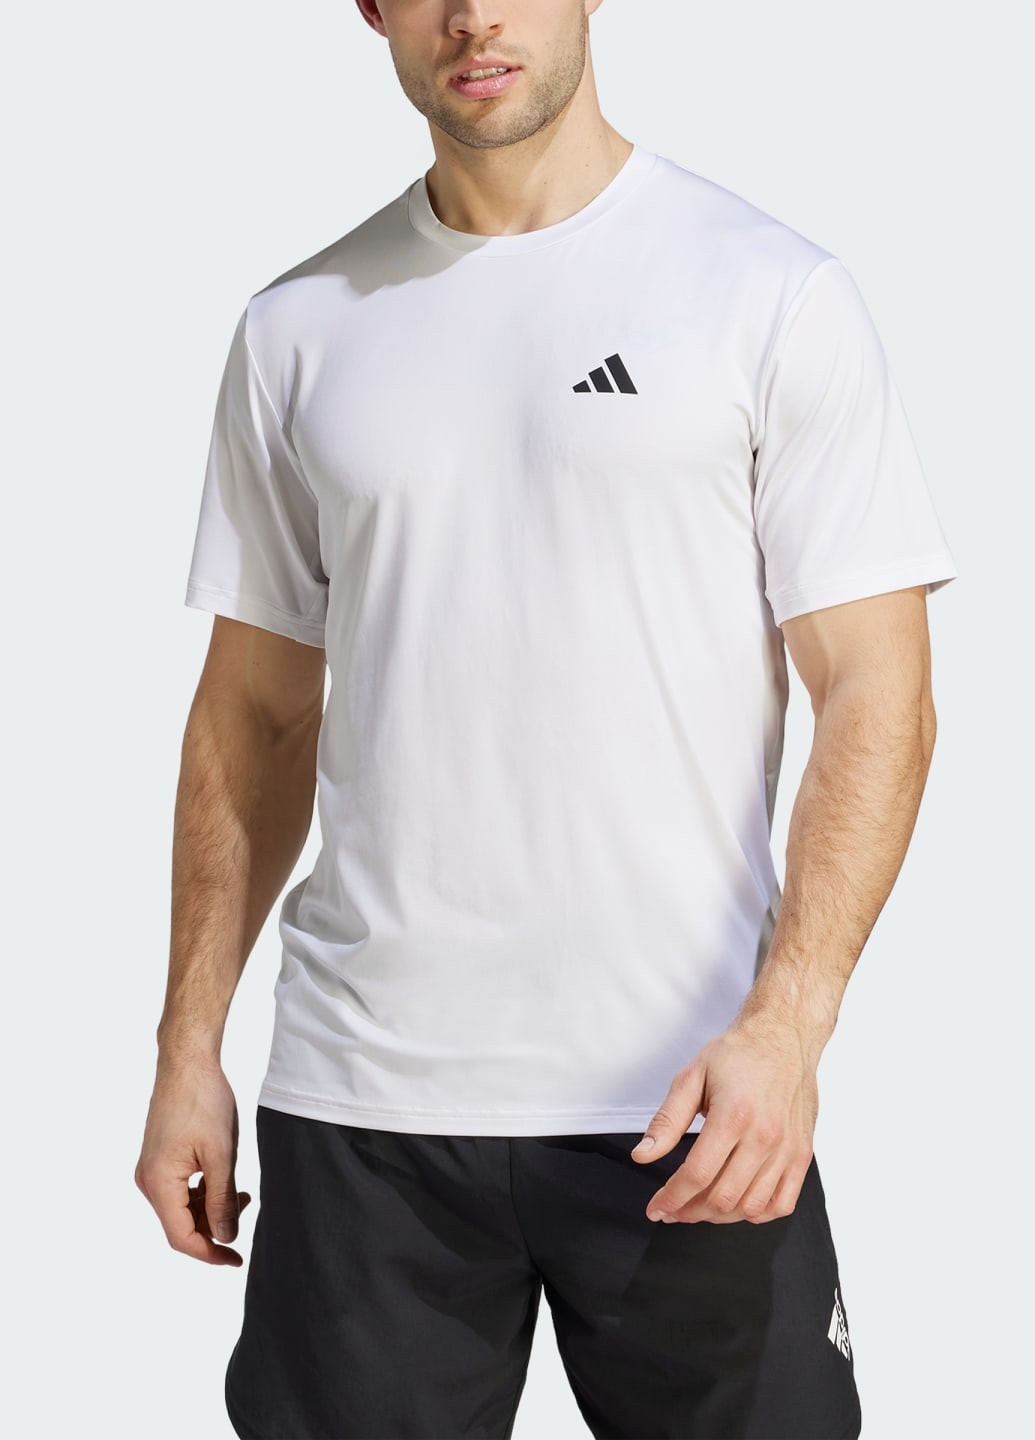 Біла футболка train essentials stretch training adidas